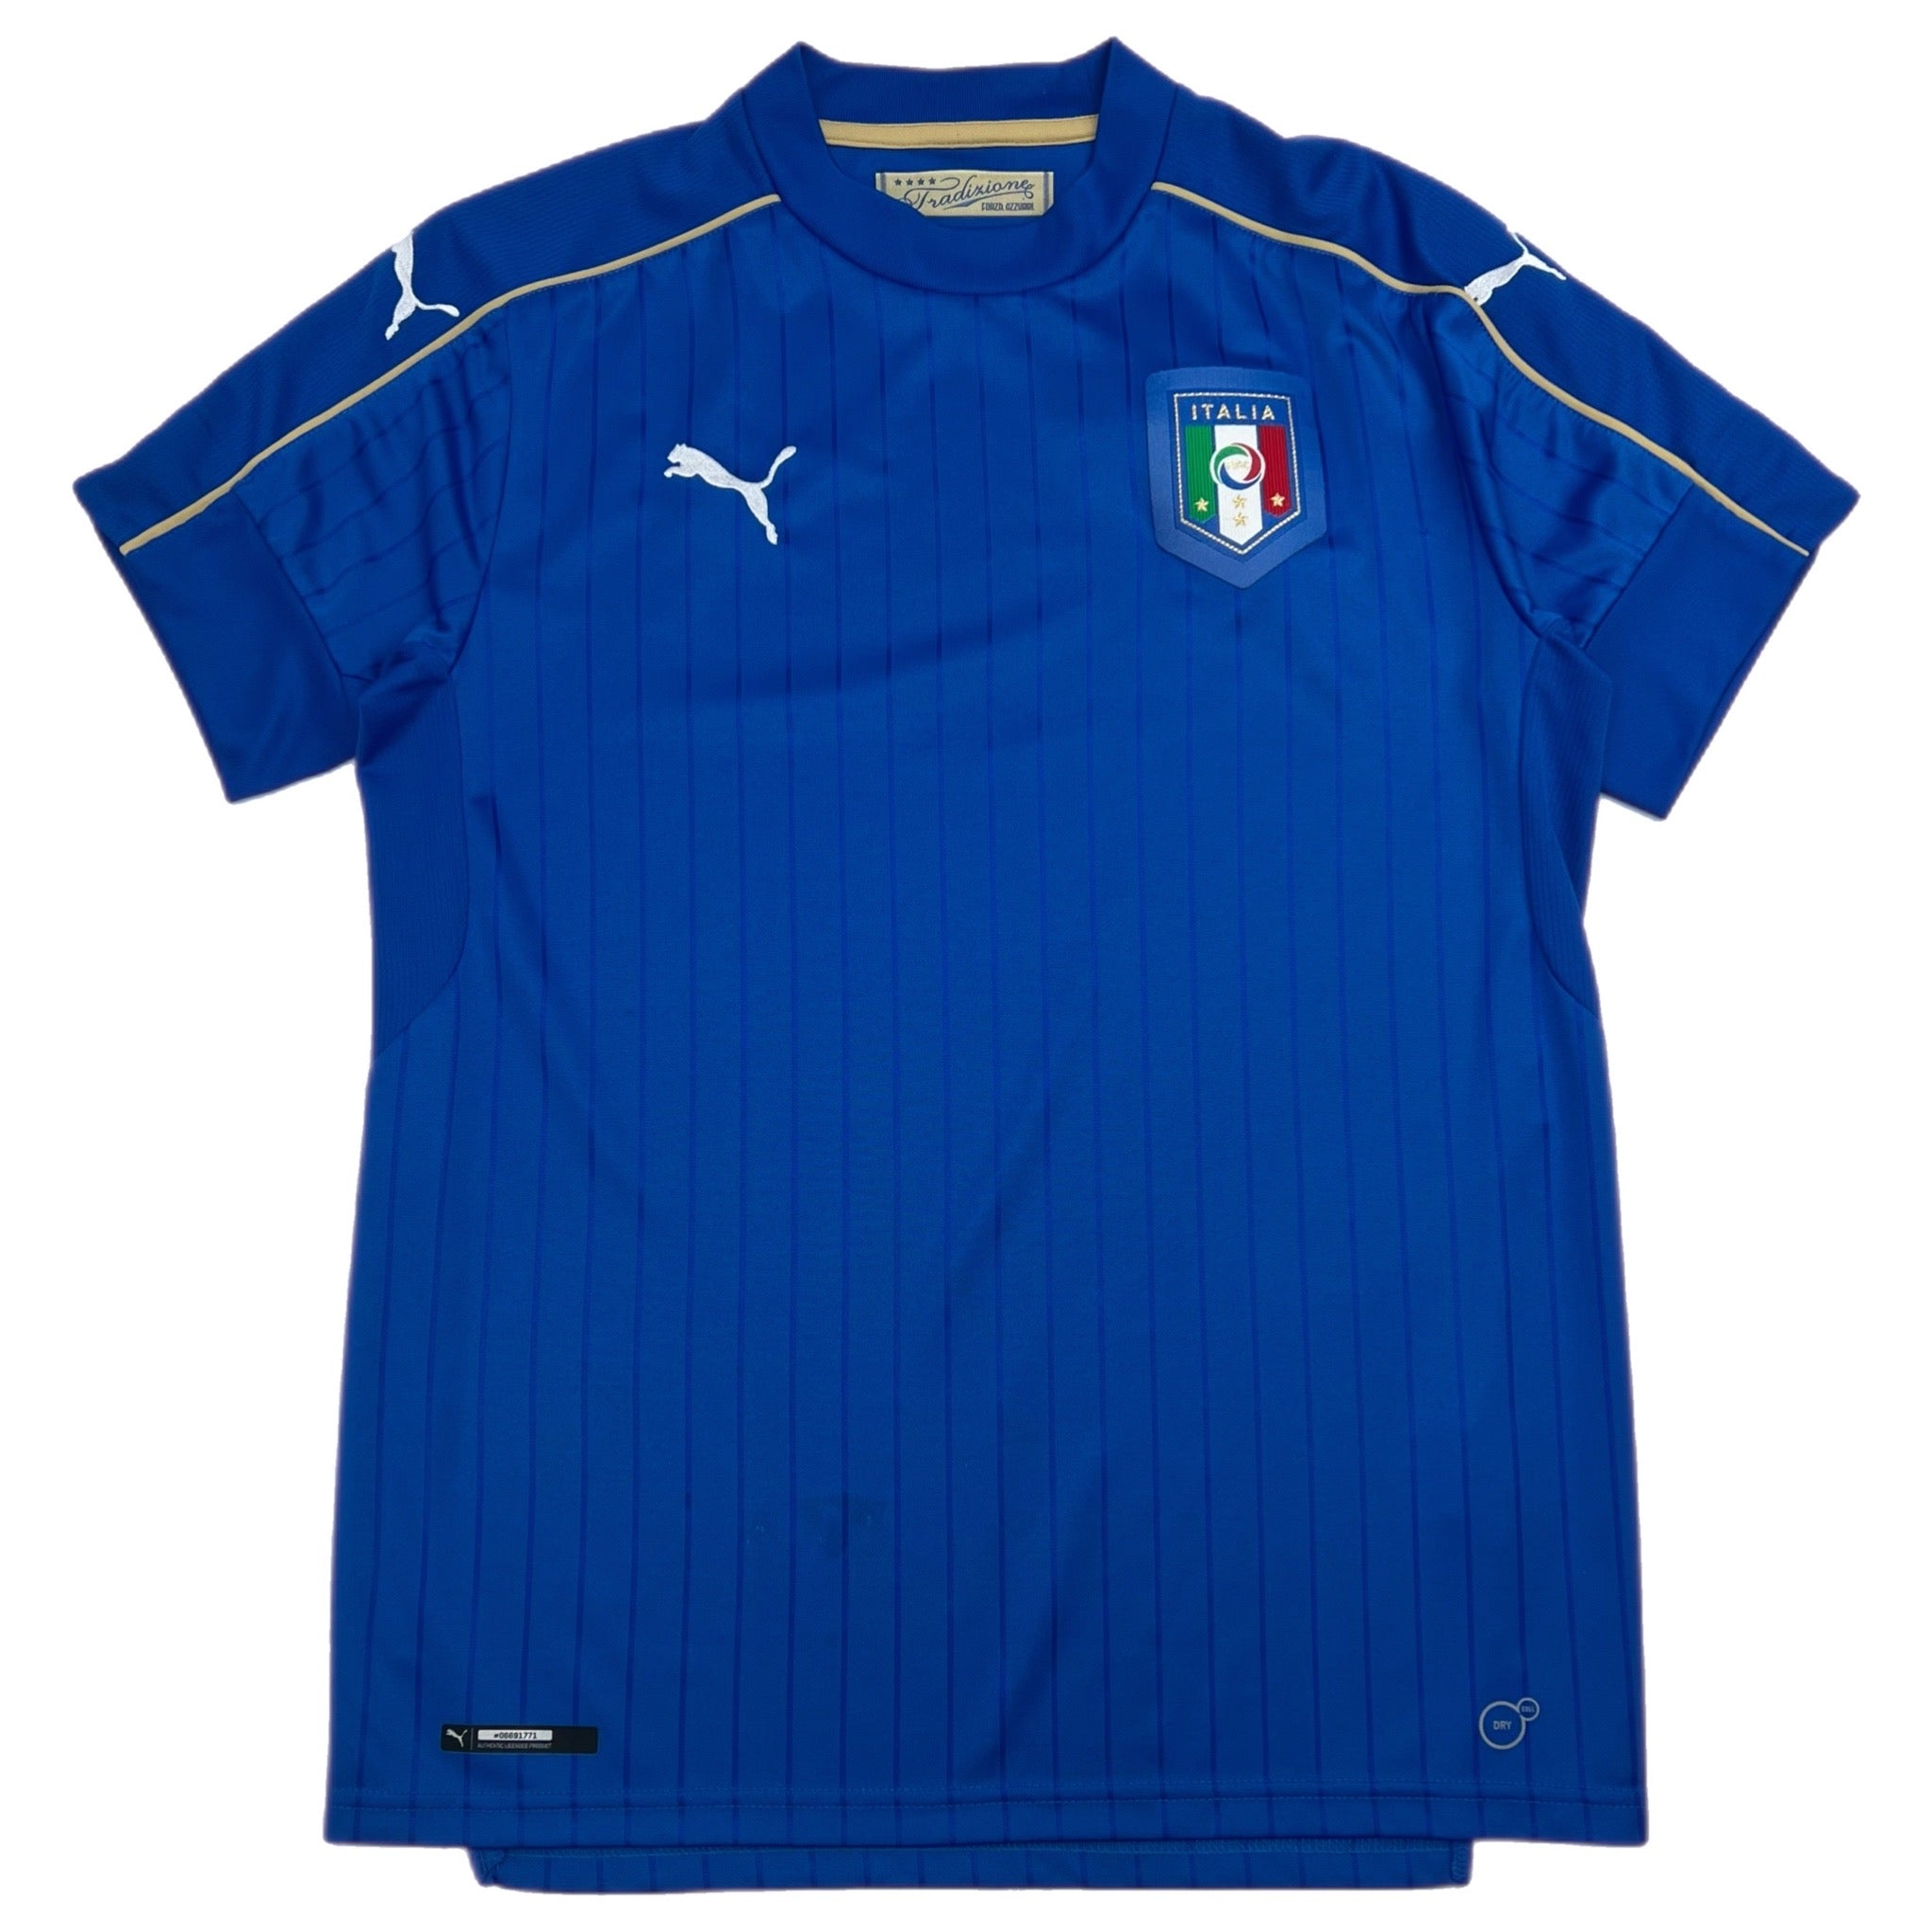 Vintage Puma Italia Jersey Blue